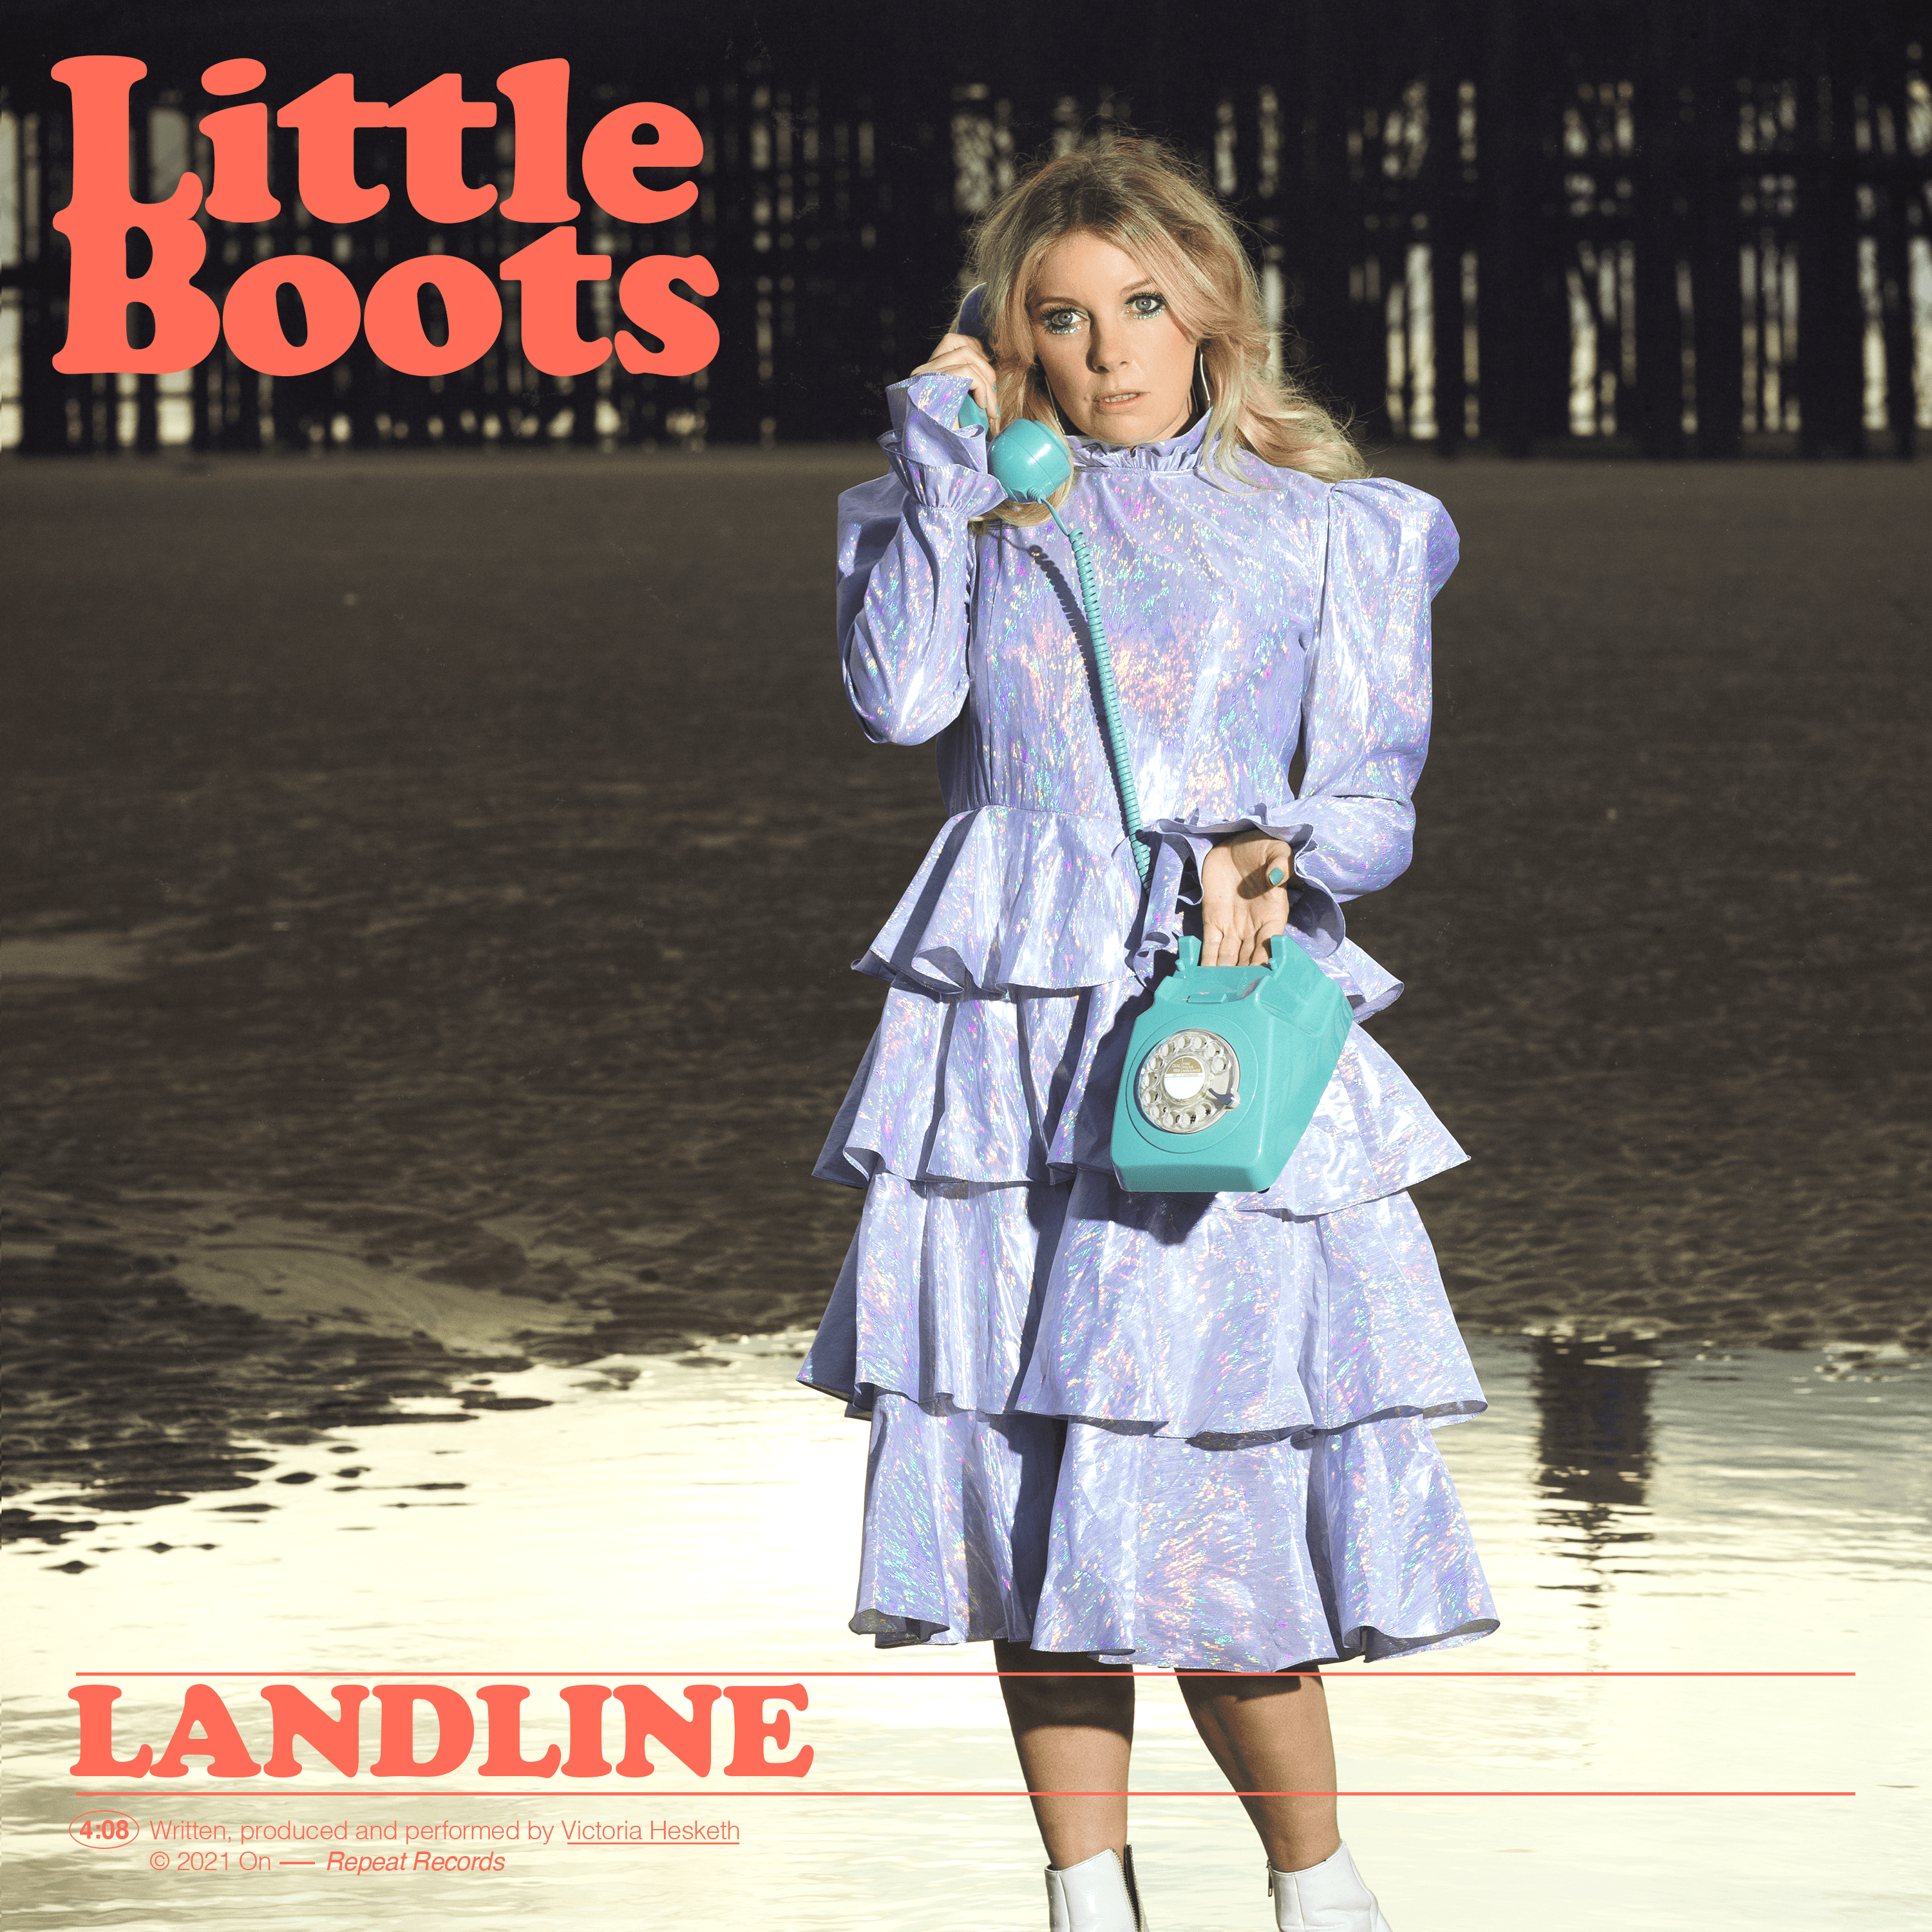 Cover art for littleboots's song: Landline